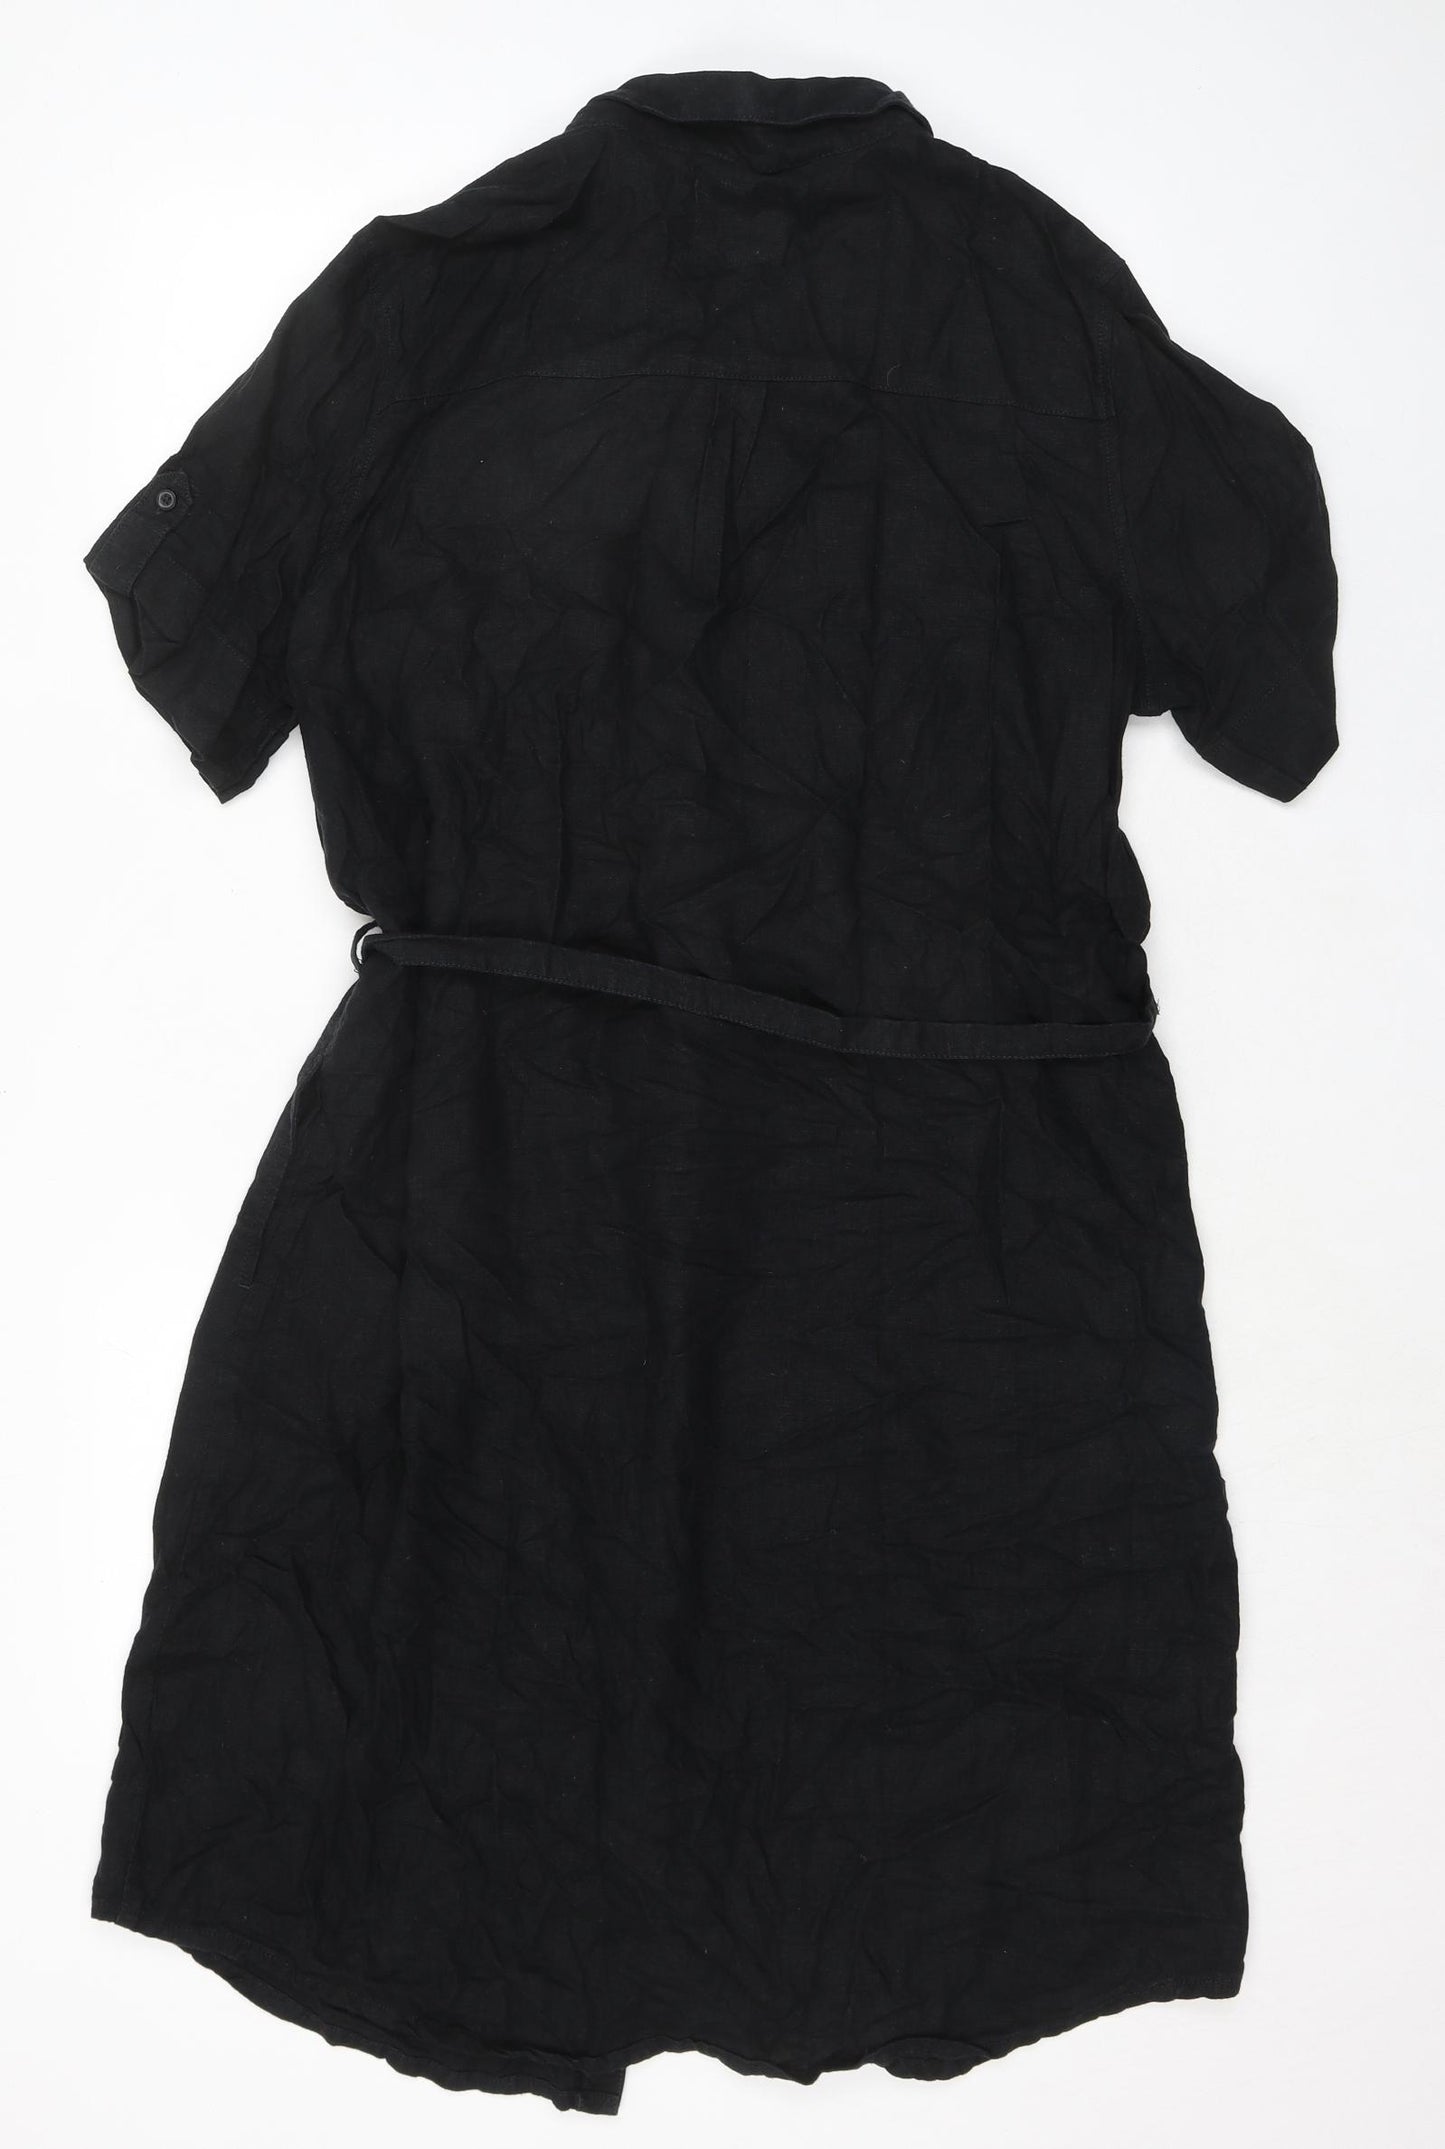 NEXT Womens Black Linen Shirt Dress Size 16 Collared Button